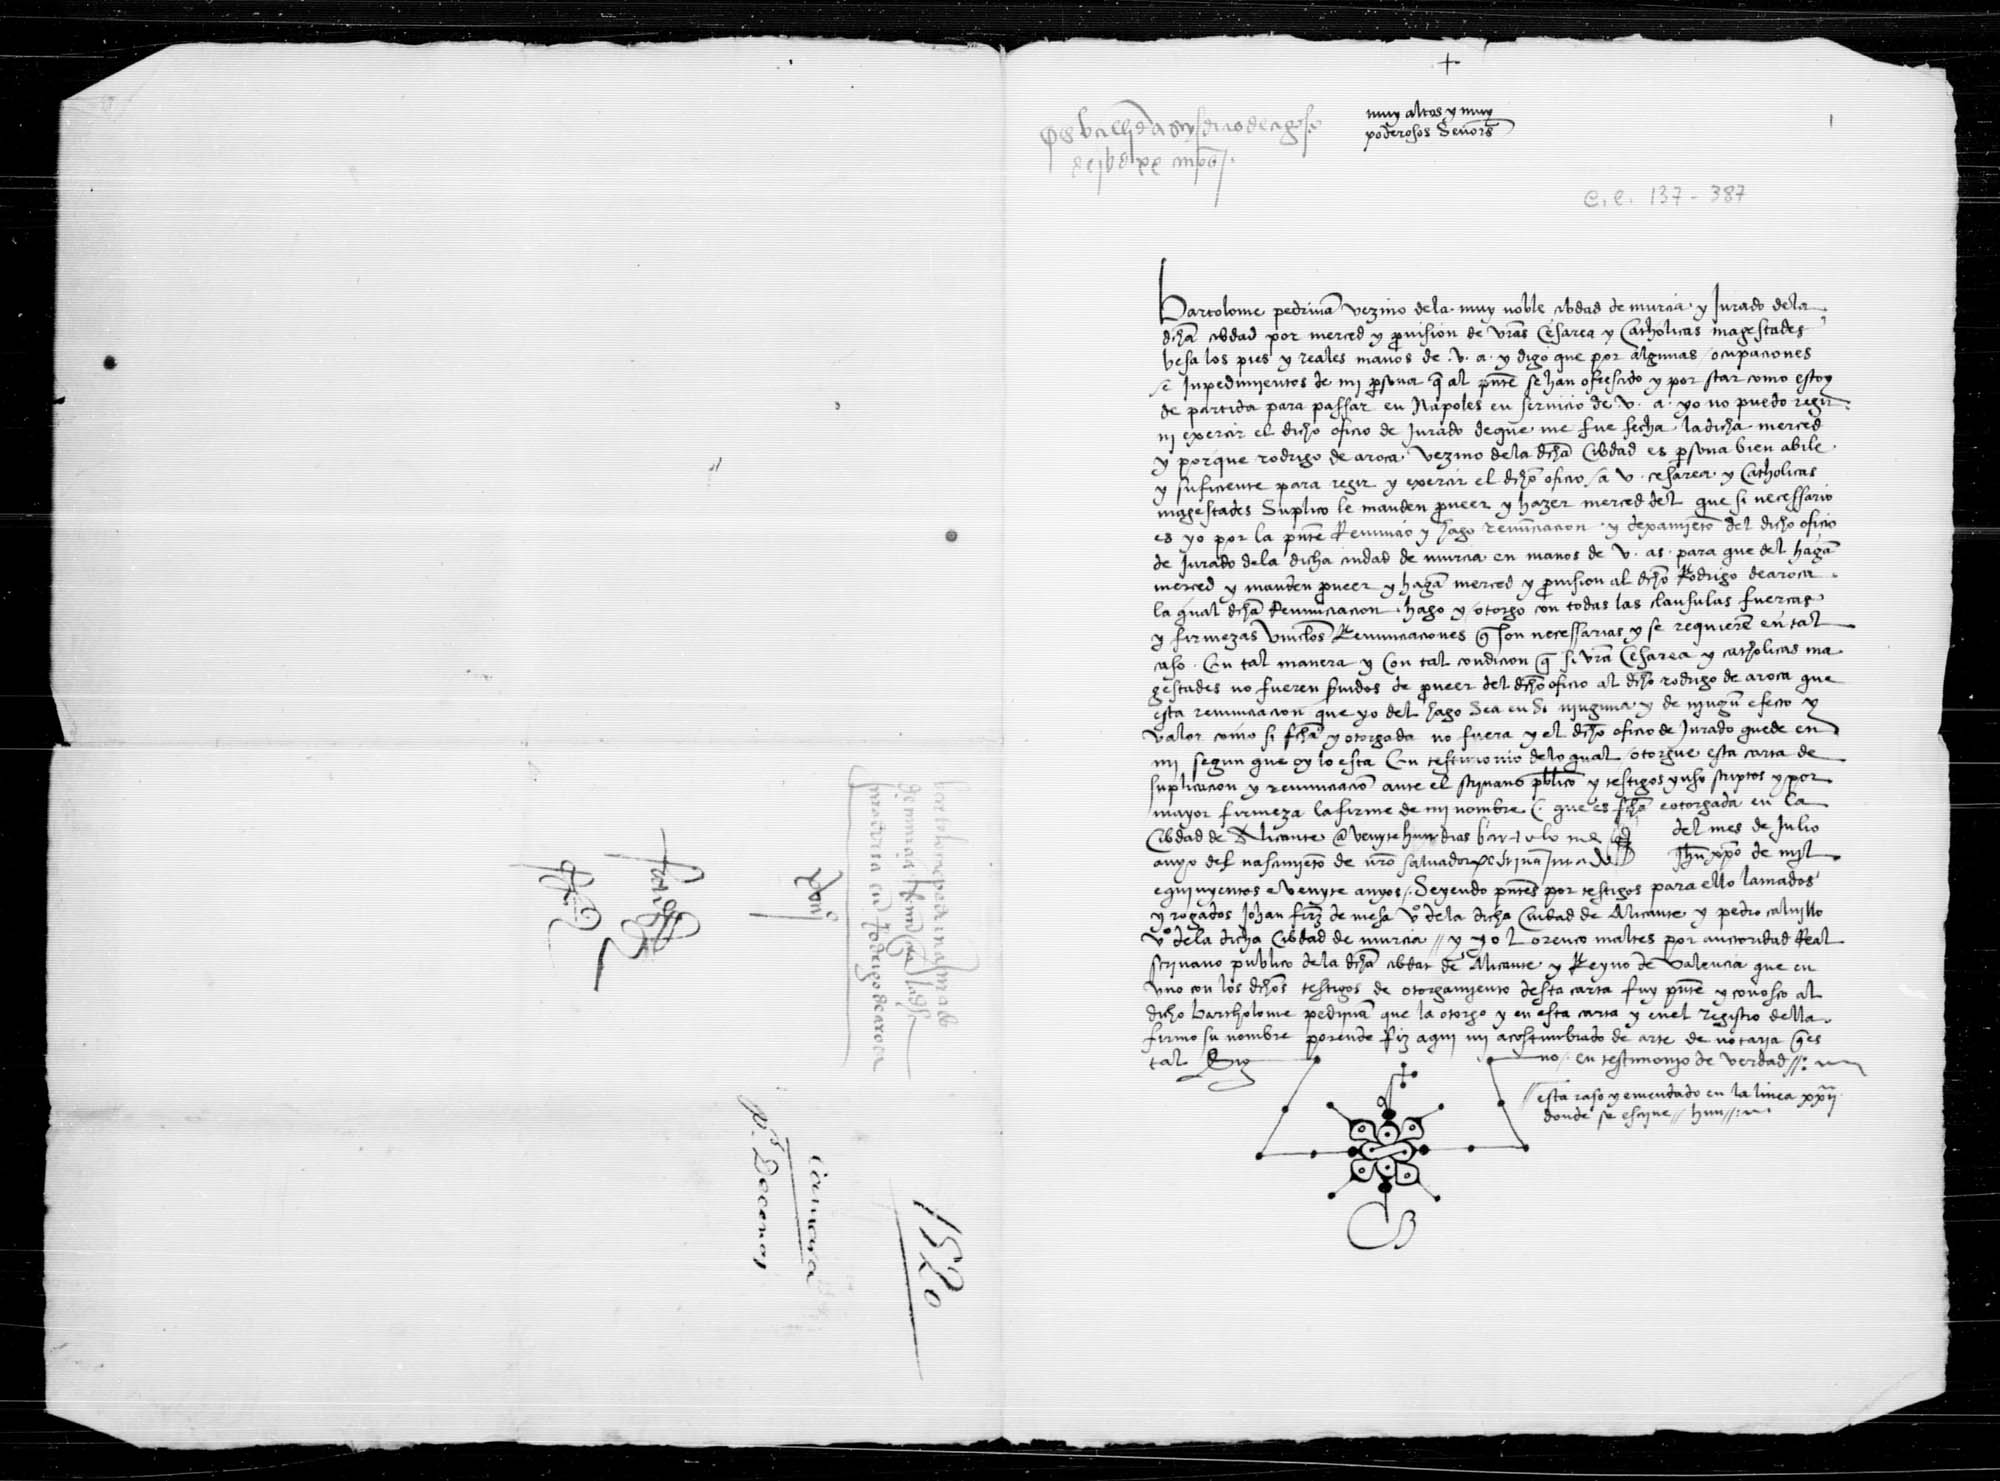 Carta por la que Bartolomé Pedriñán, jurado de la ciudad de Murcia, renuncia su oficio en el Rey -debido a su traslado al Reino de Nápoles- para que éste haga merced de él a Rodrigo de Aroca, vecino de esa ciudad.